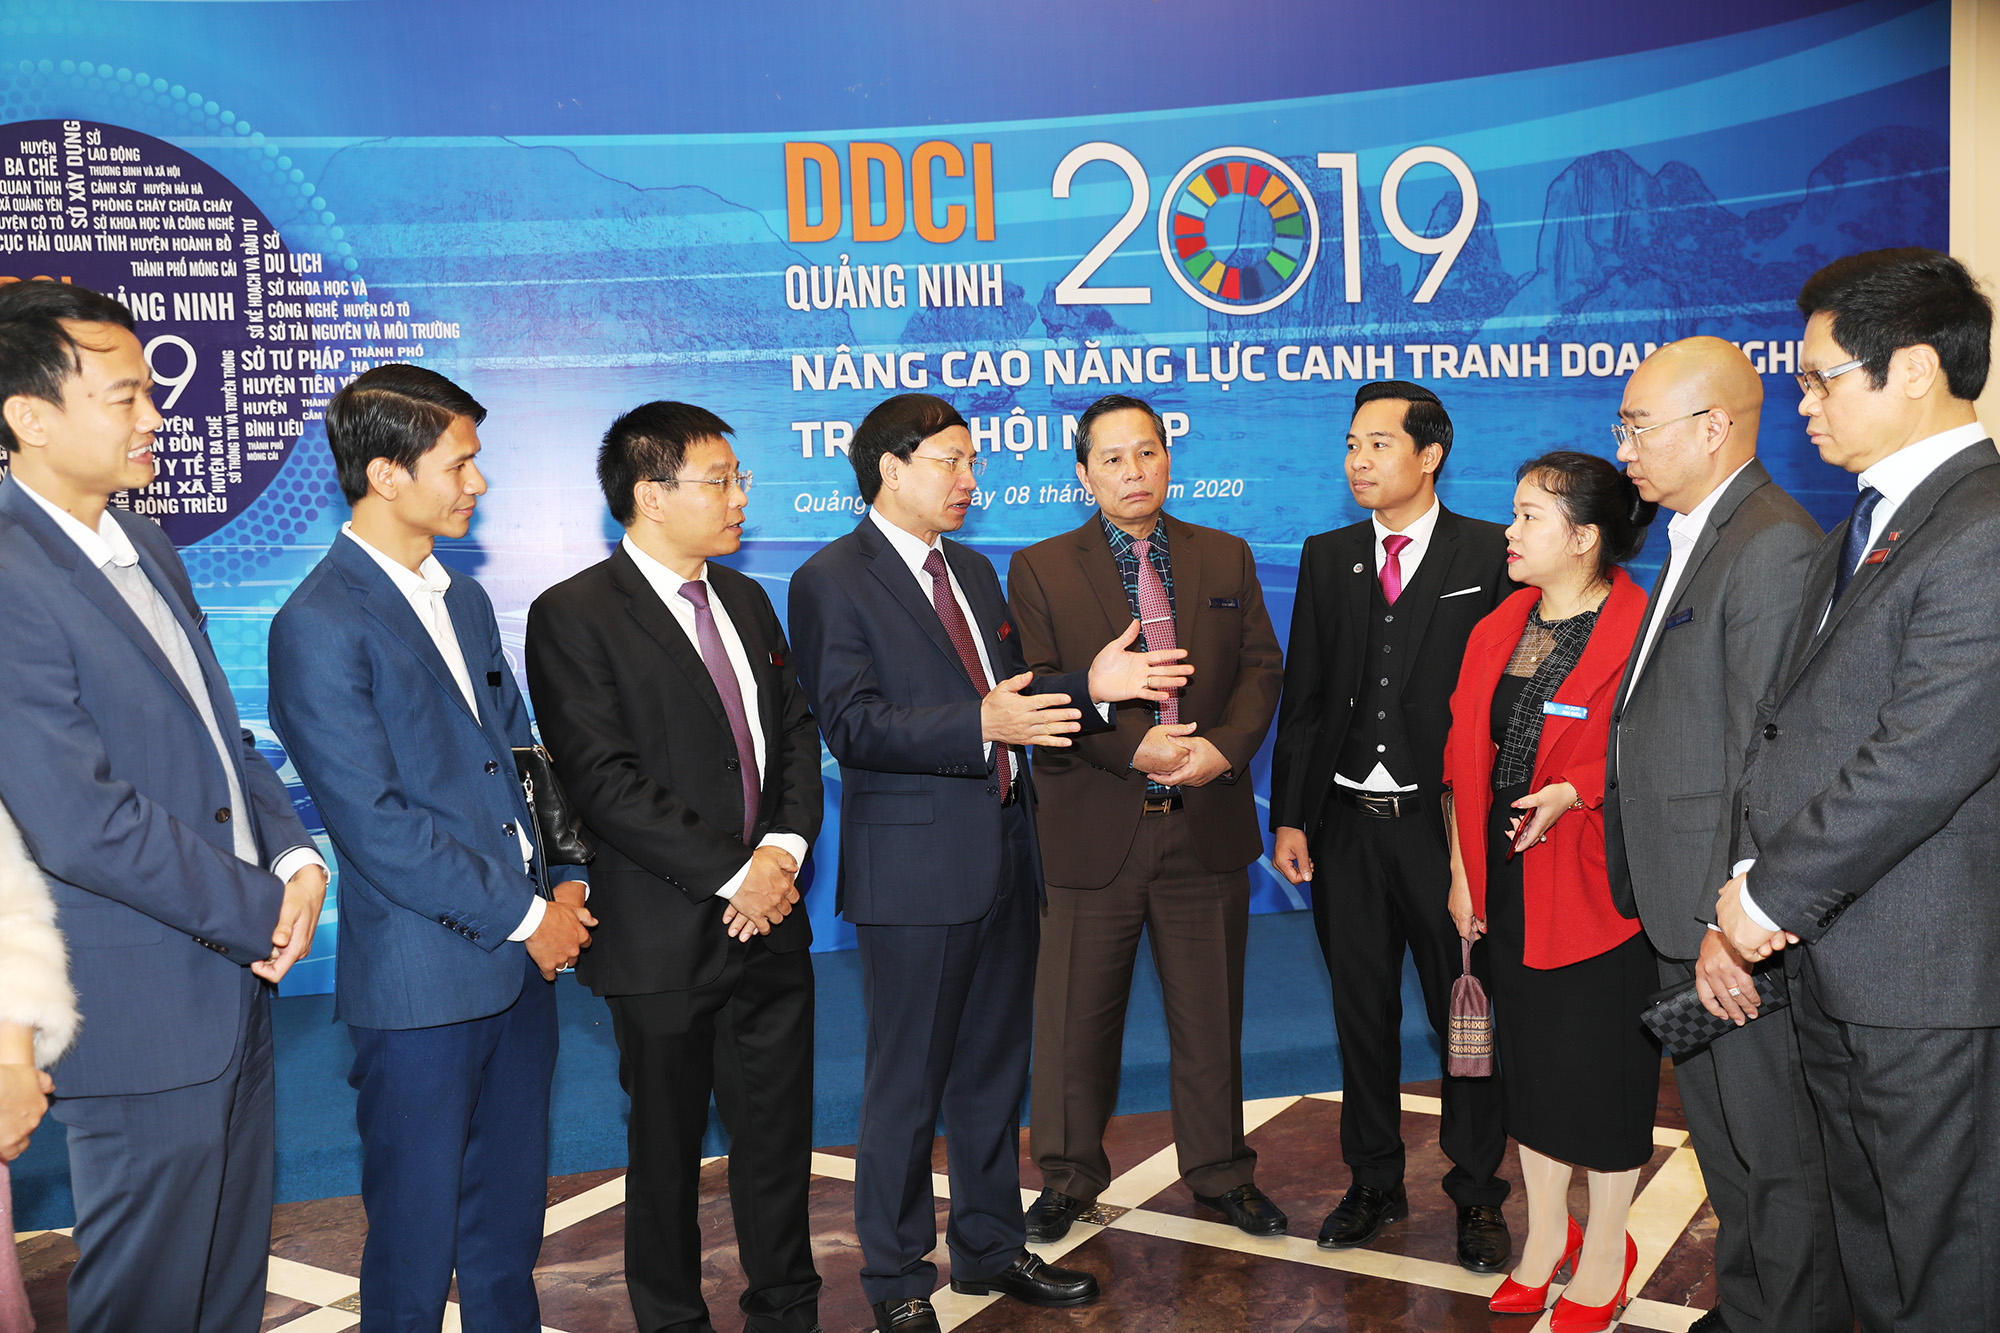 Lãnh đạo tỉnh Quảng Ninh trò chuyện với doanh nghiệp tại lễ công bố DDCI Quảng Ninh 2019, tổ chức tại TP Hạ Long, tháng 2/2020.